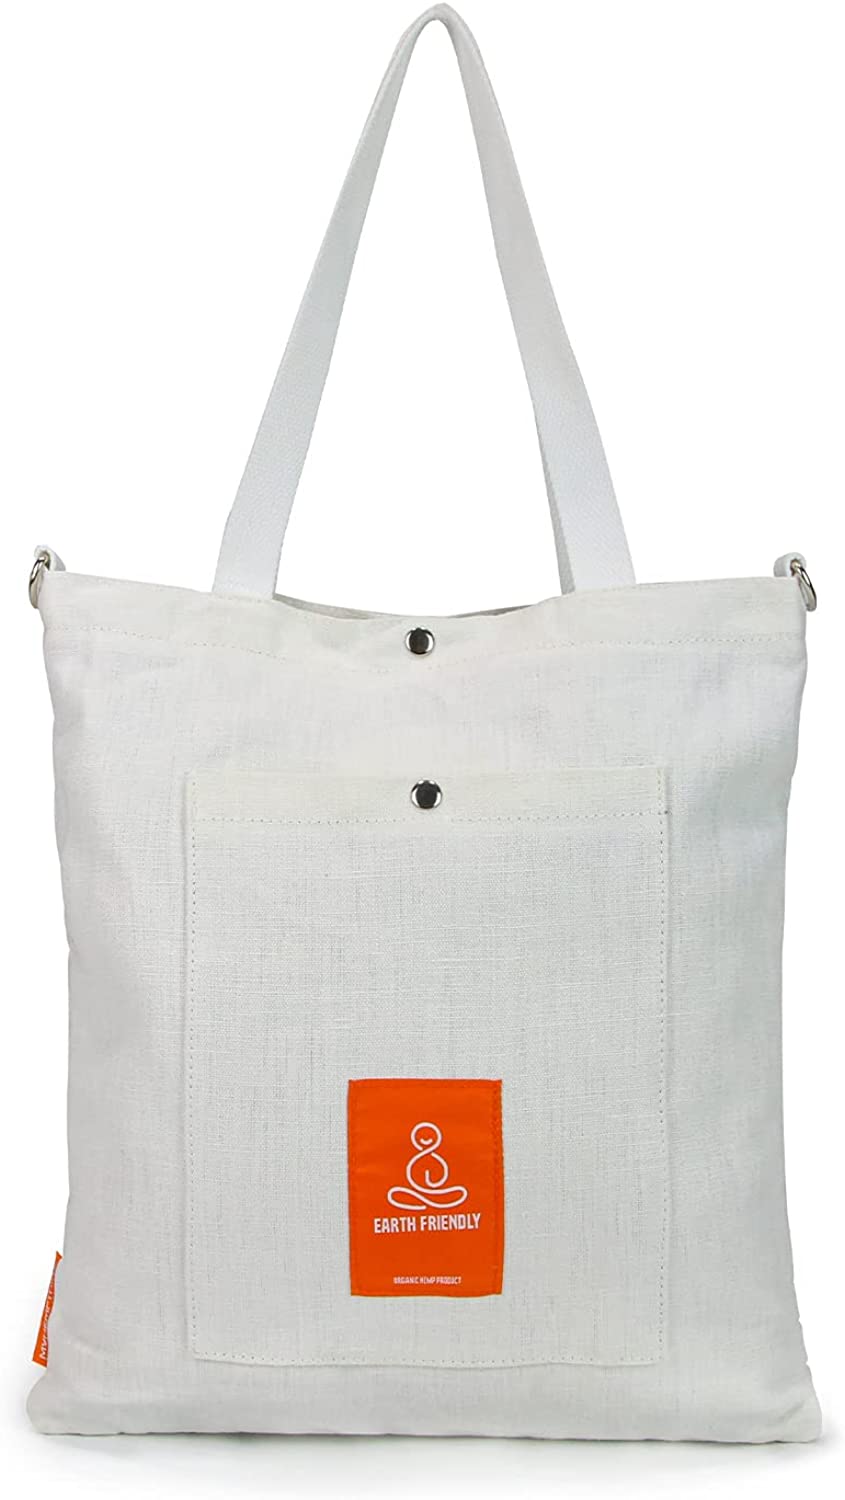 The Natural Hippy Multipurpose Hemp Shoulder Bag – My Hemp Bag